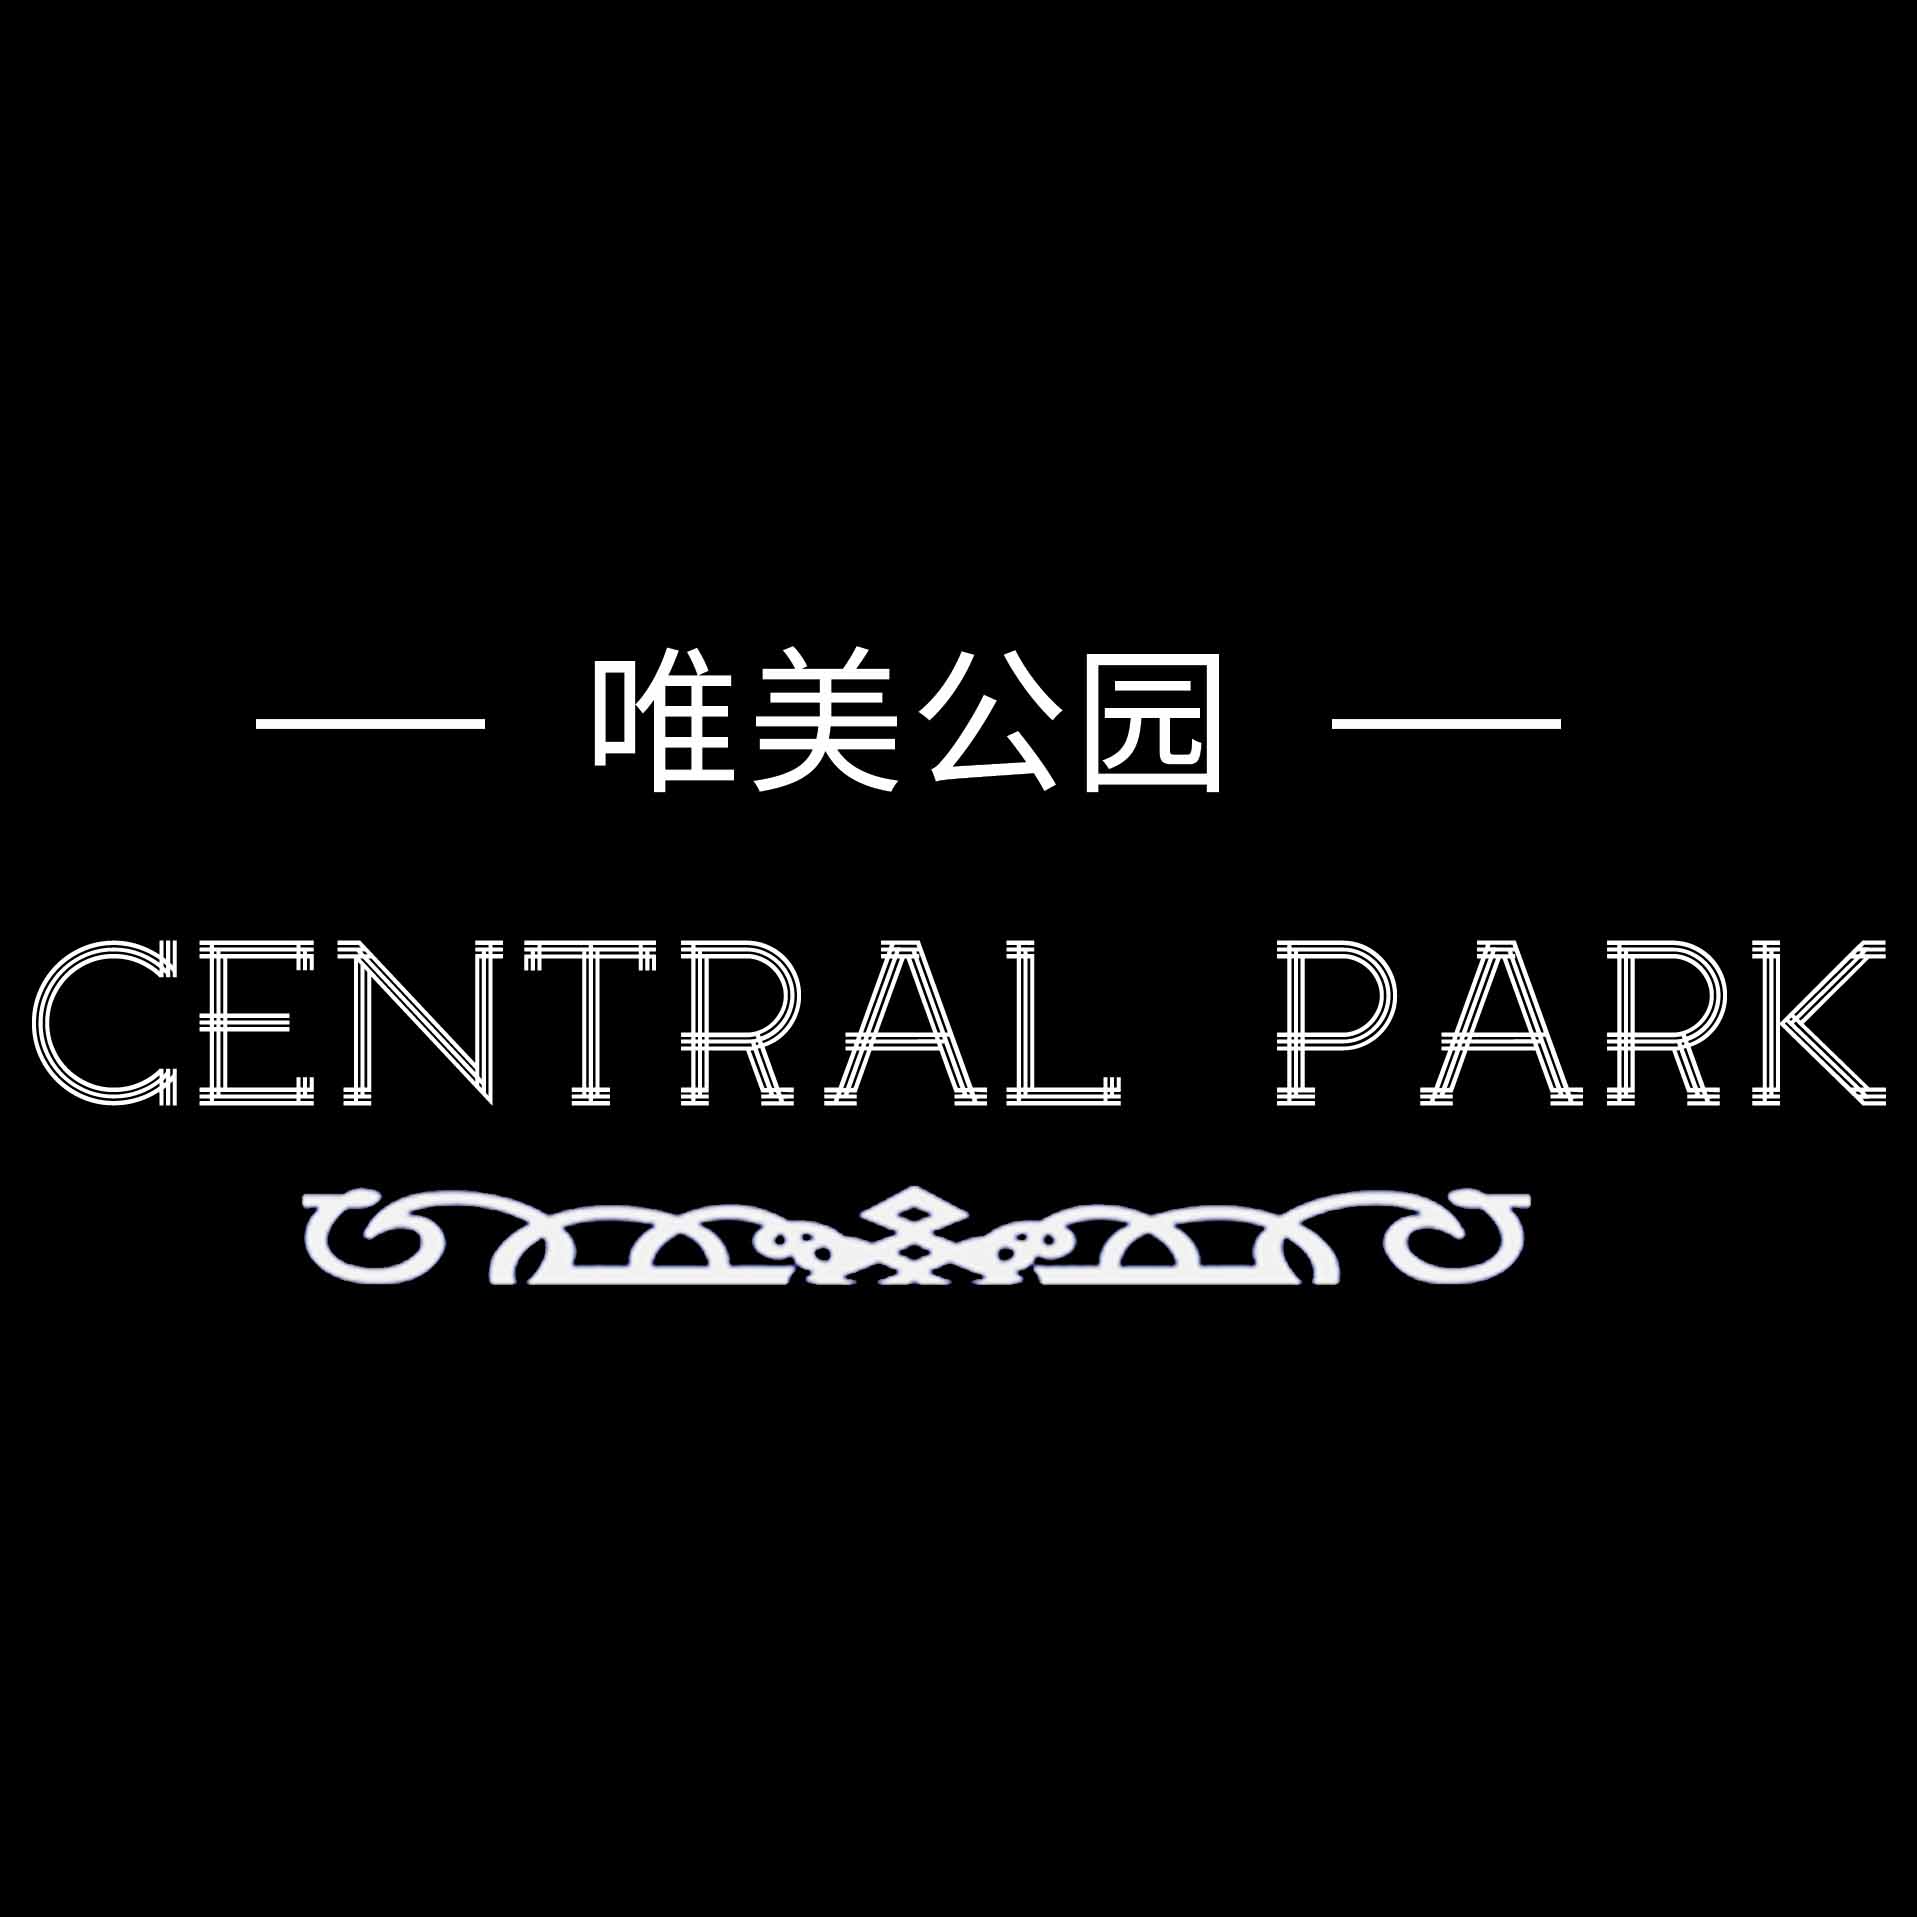 唯美公园central park